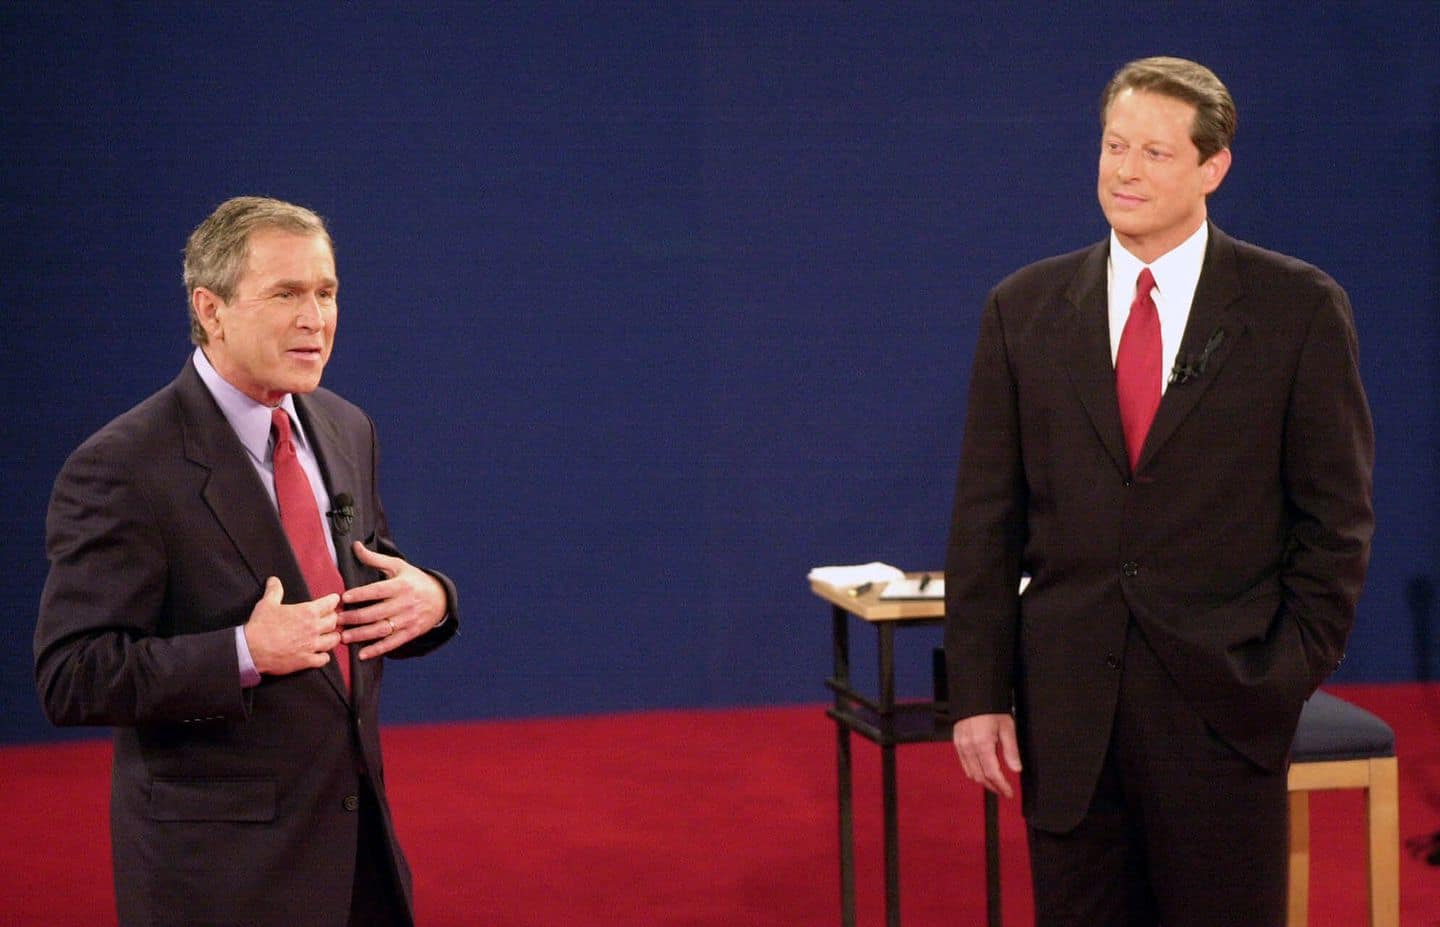 Al Gore and George W. Bush